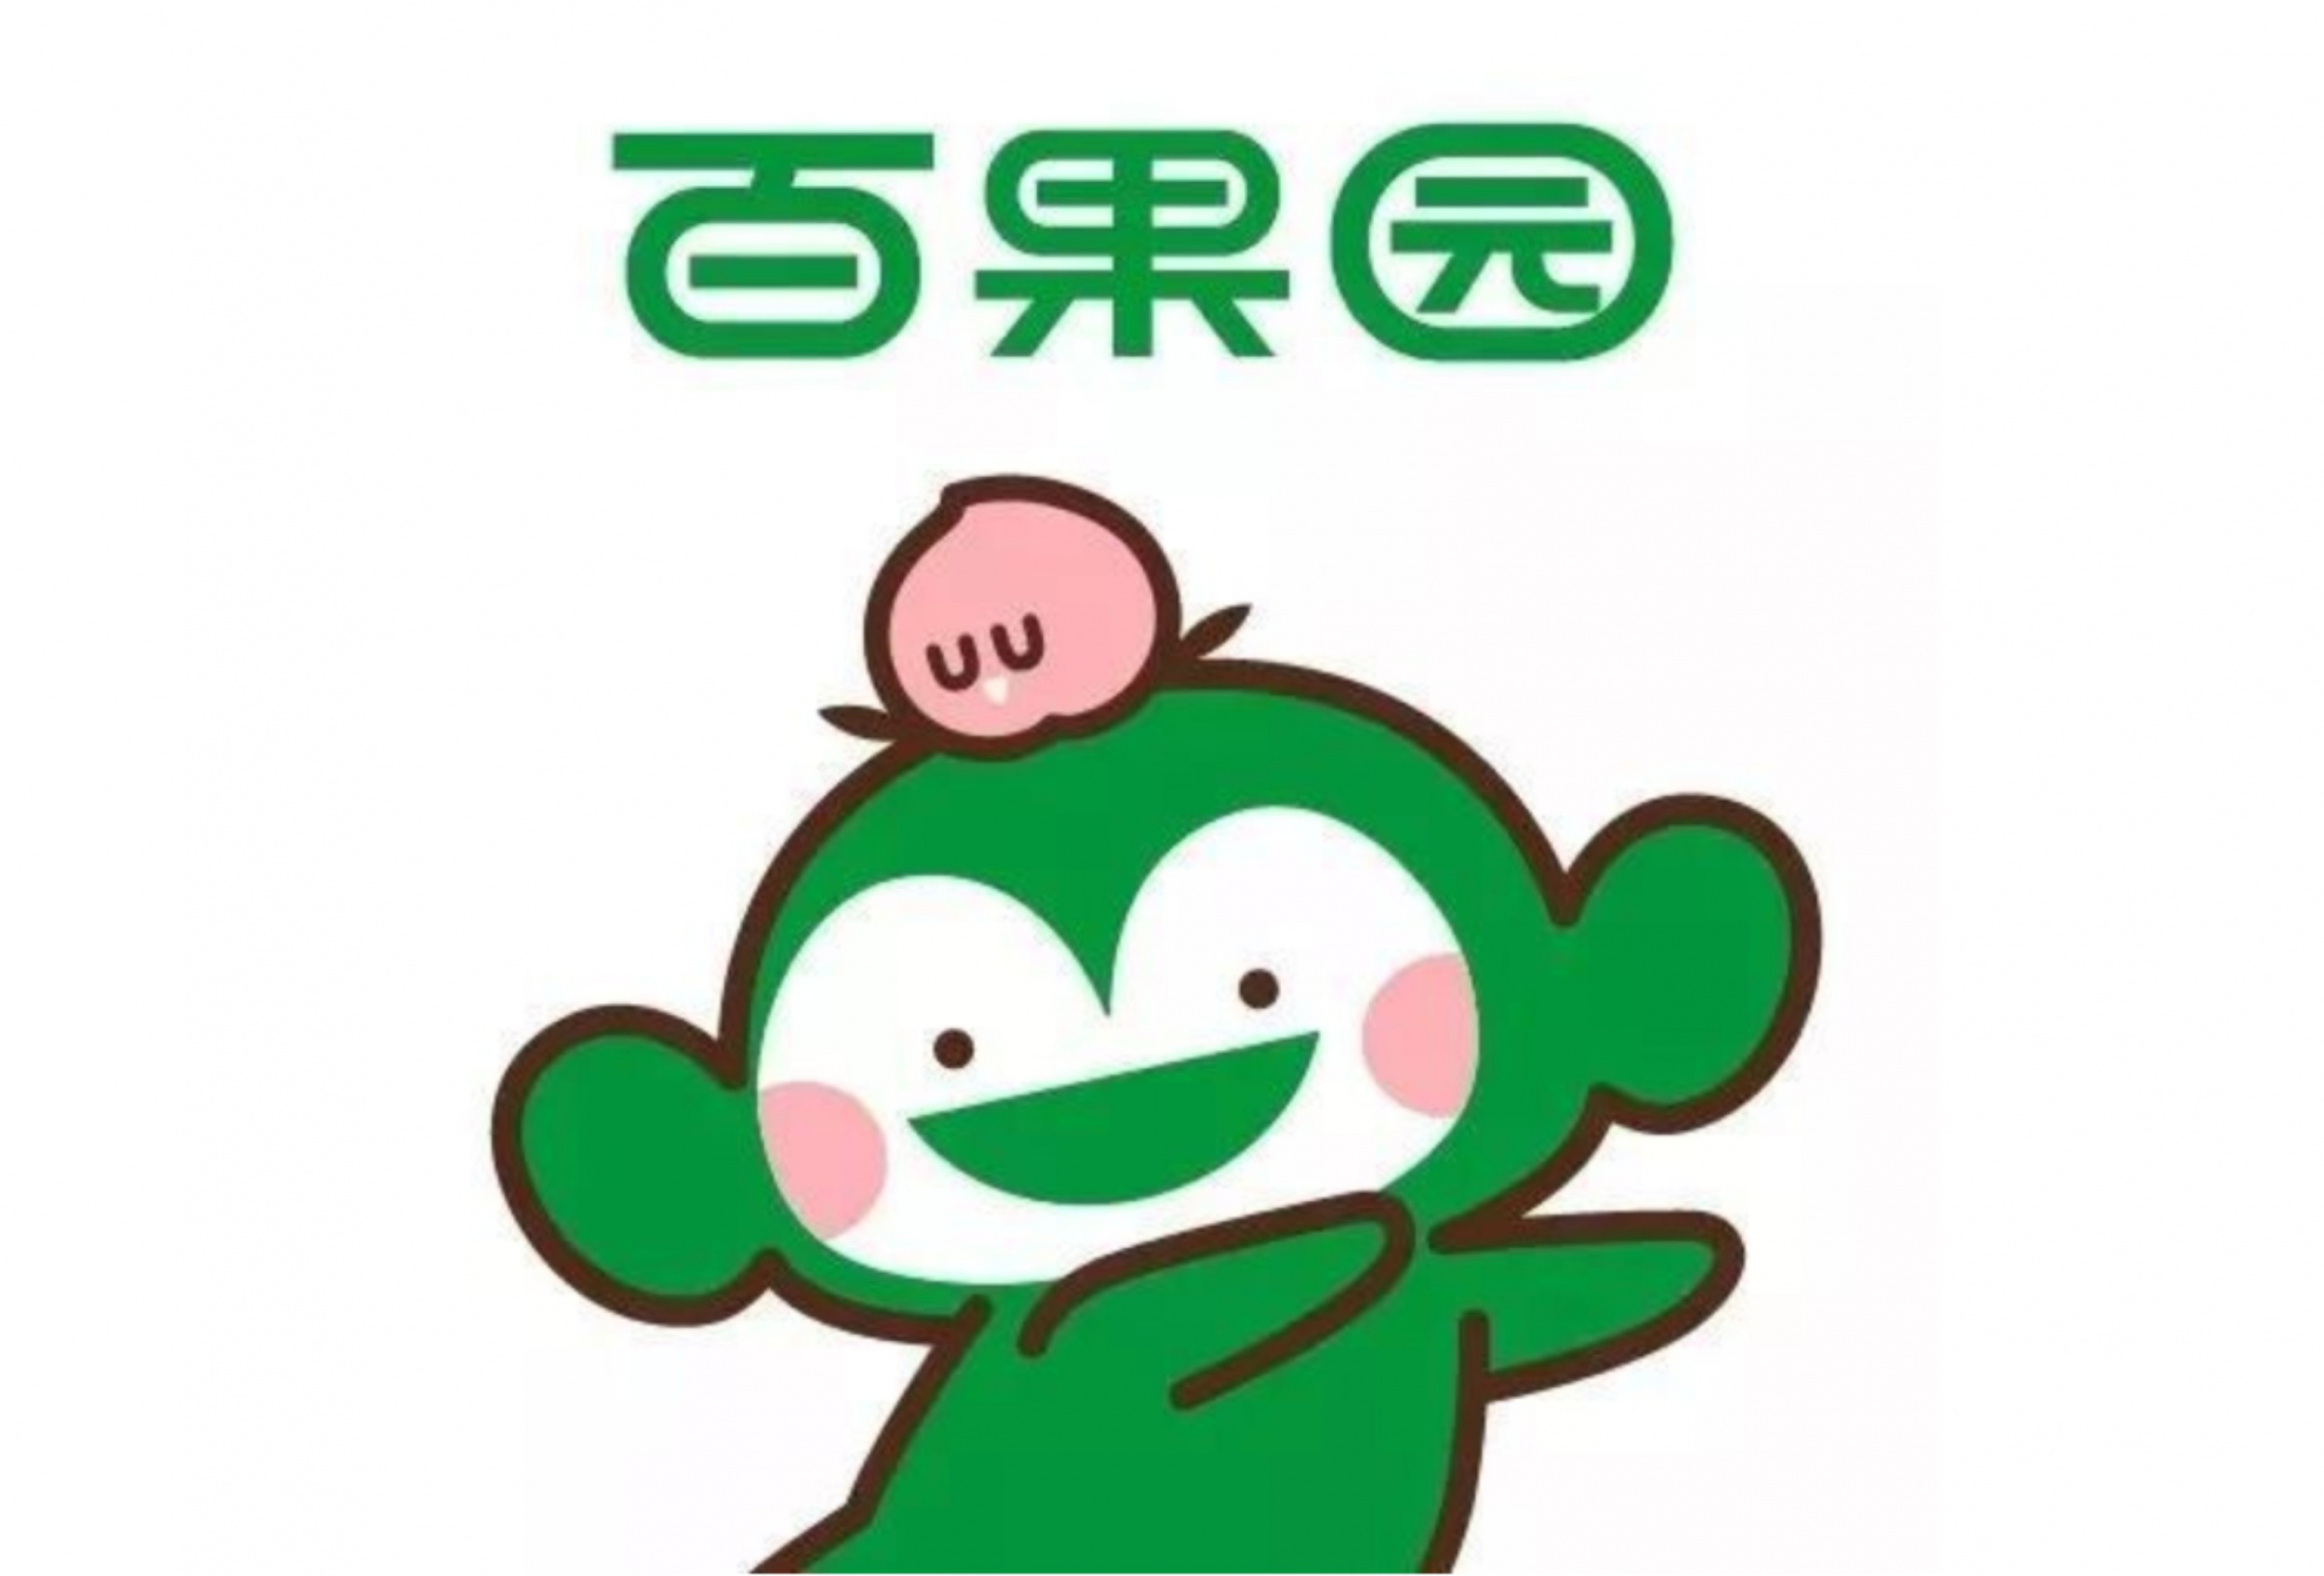 郑州百果园logo形象升级,焕发企业活力